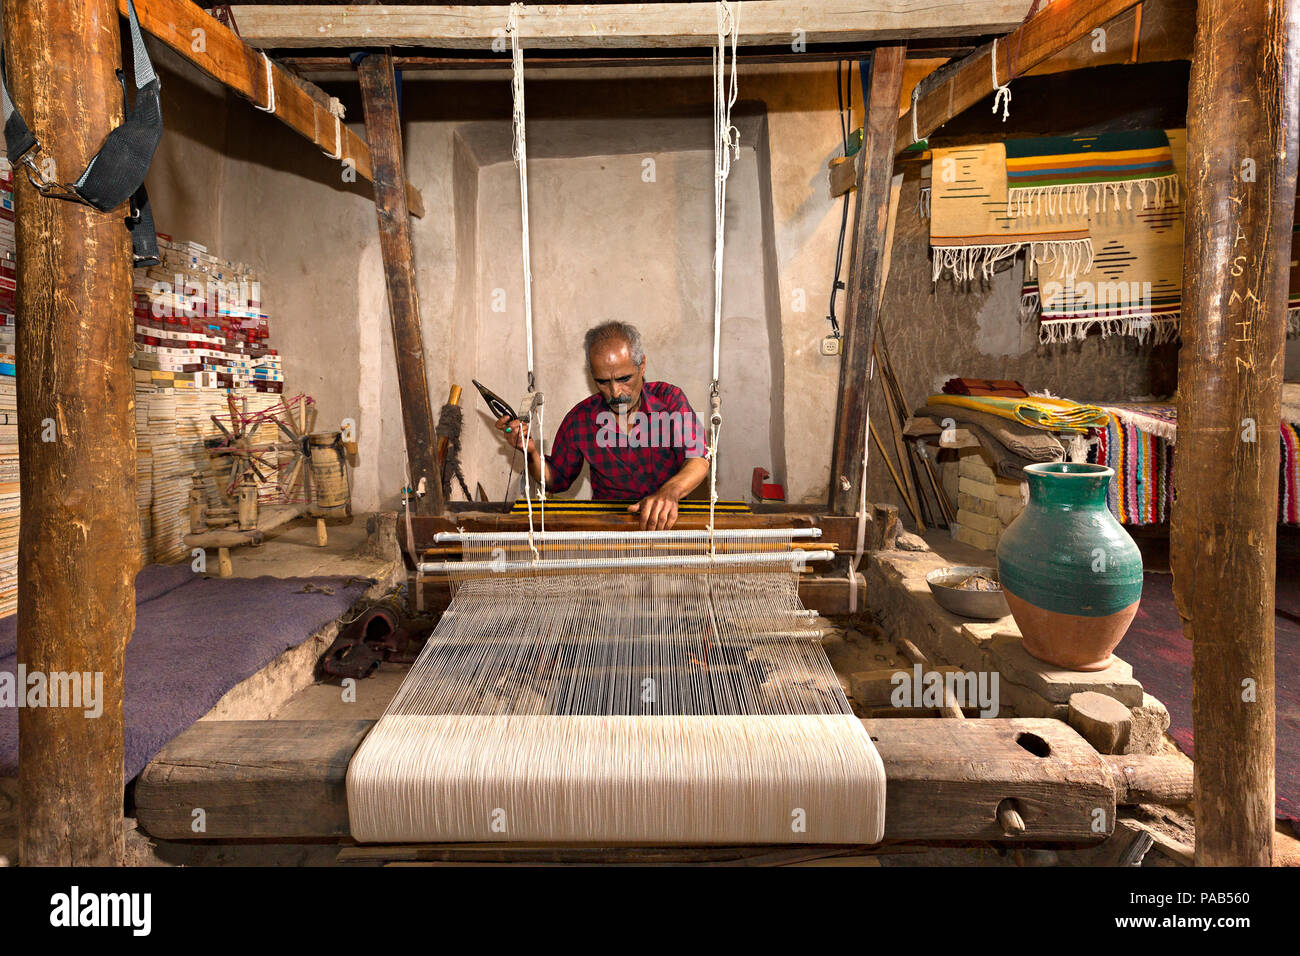 El hombre iraní teje telas conocido como Aba, en forma tradicional, en la localidad de Naein, Irán. Foto de stock